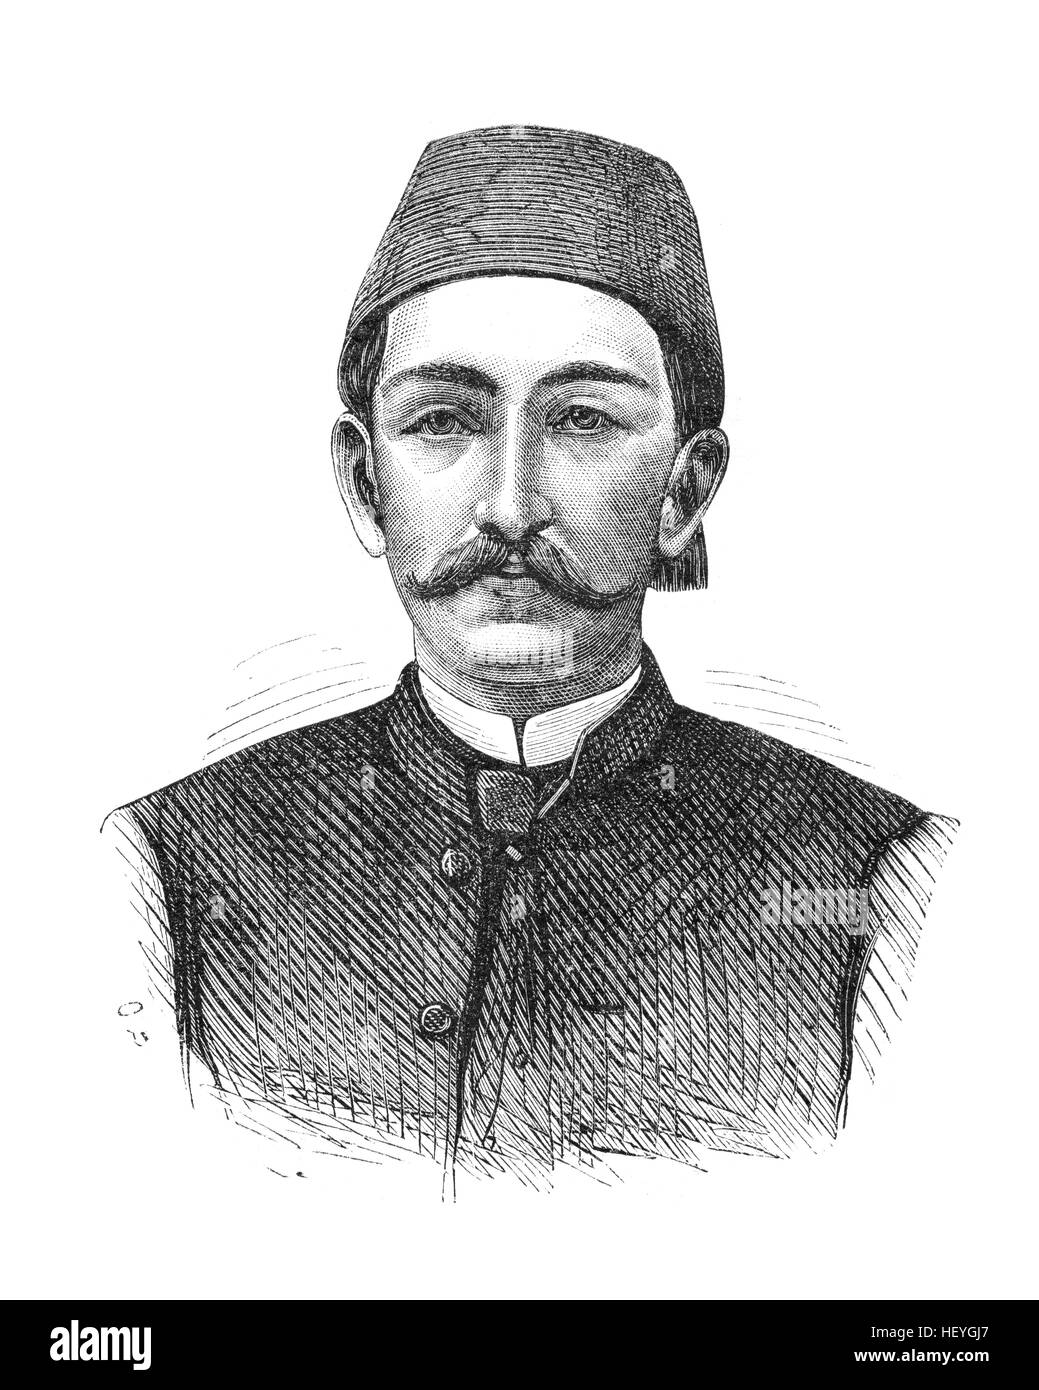 Abdul Hamid II (1842-1918) fu la trentaquattresima sultano dell'Impero Ottomano e l'ultimo sultano di esercitare un efficace controllo autocratico oltre la fratturazione sta Foto Stock